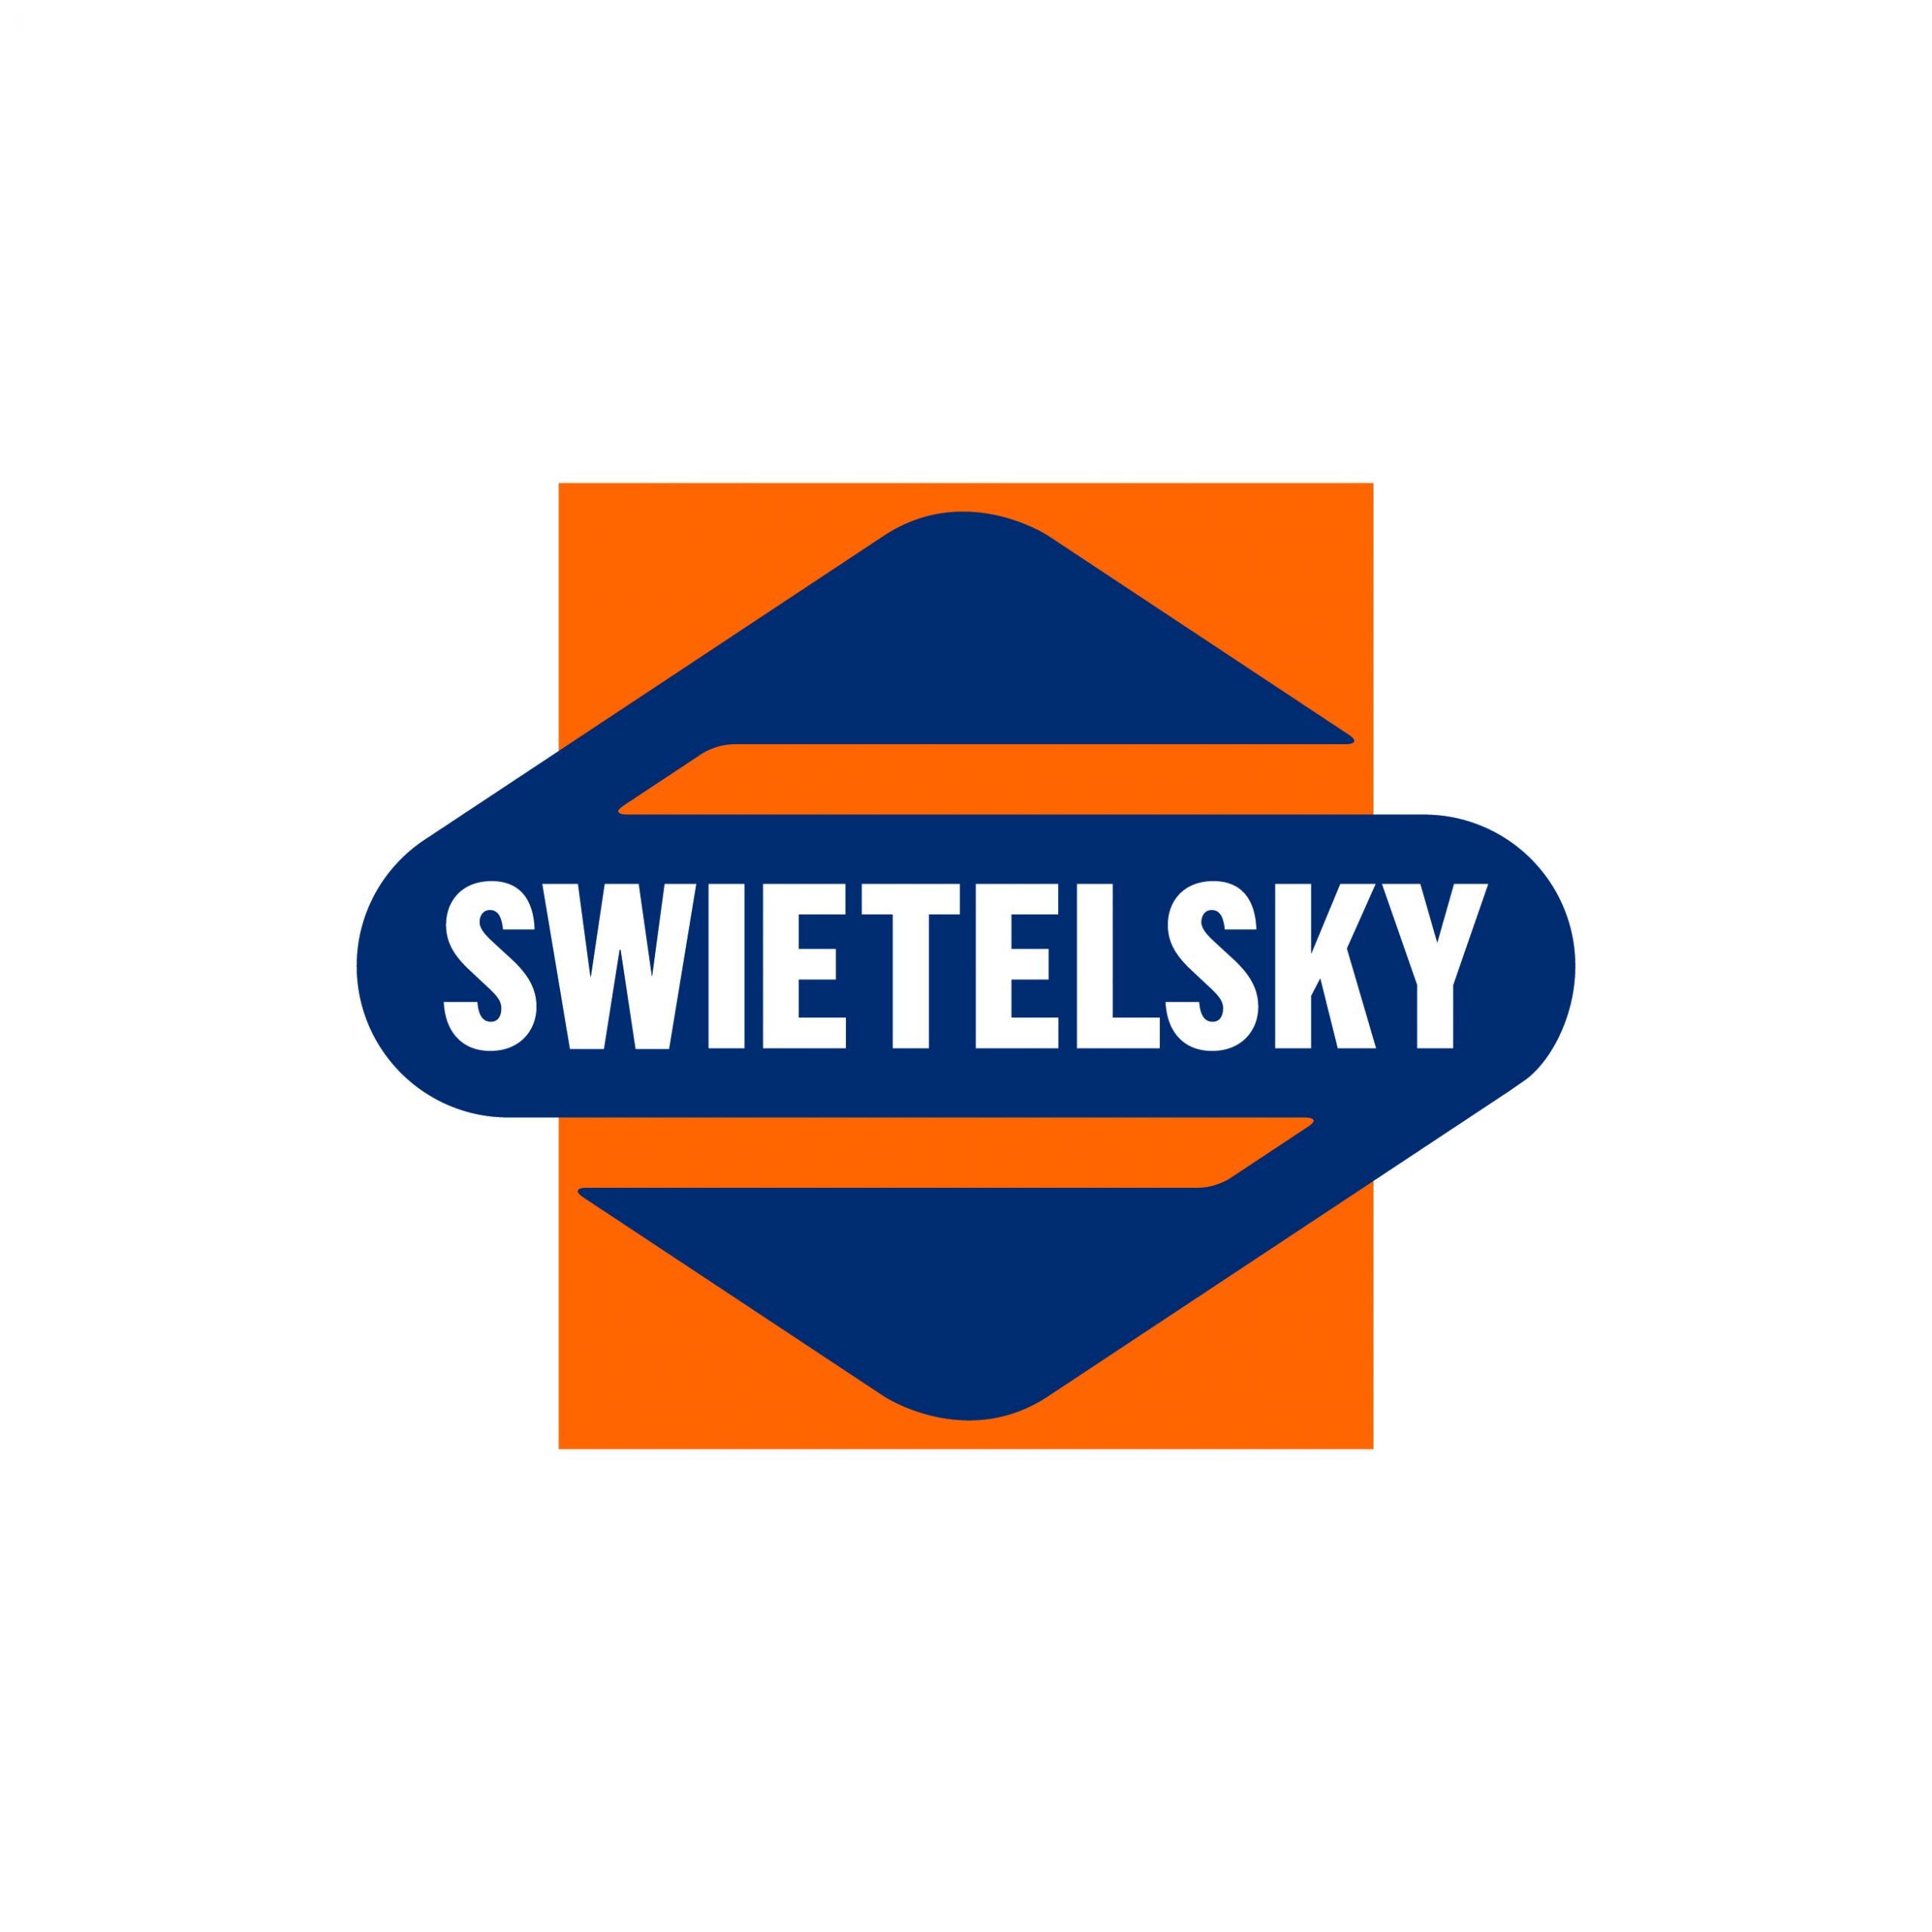 https://www.fiber4net.at/wp-content/uploads/Swietelsky-Logo-CMYK-Positive-scaled.jpg